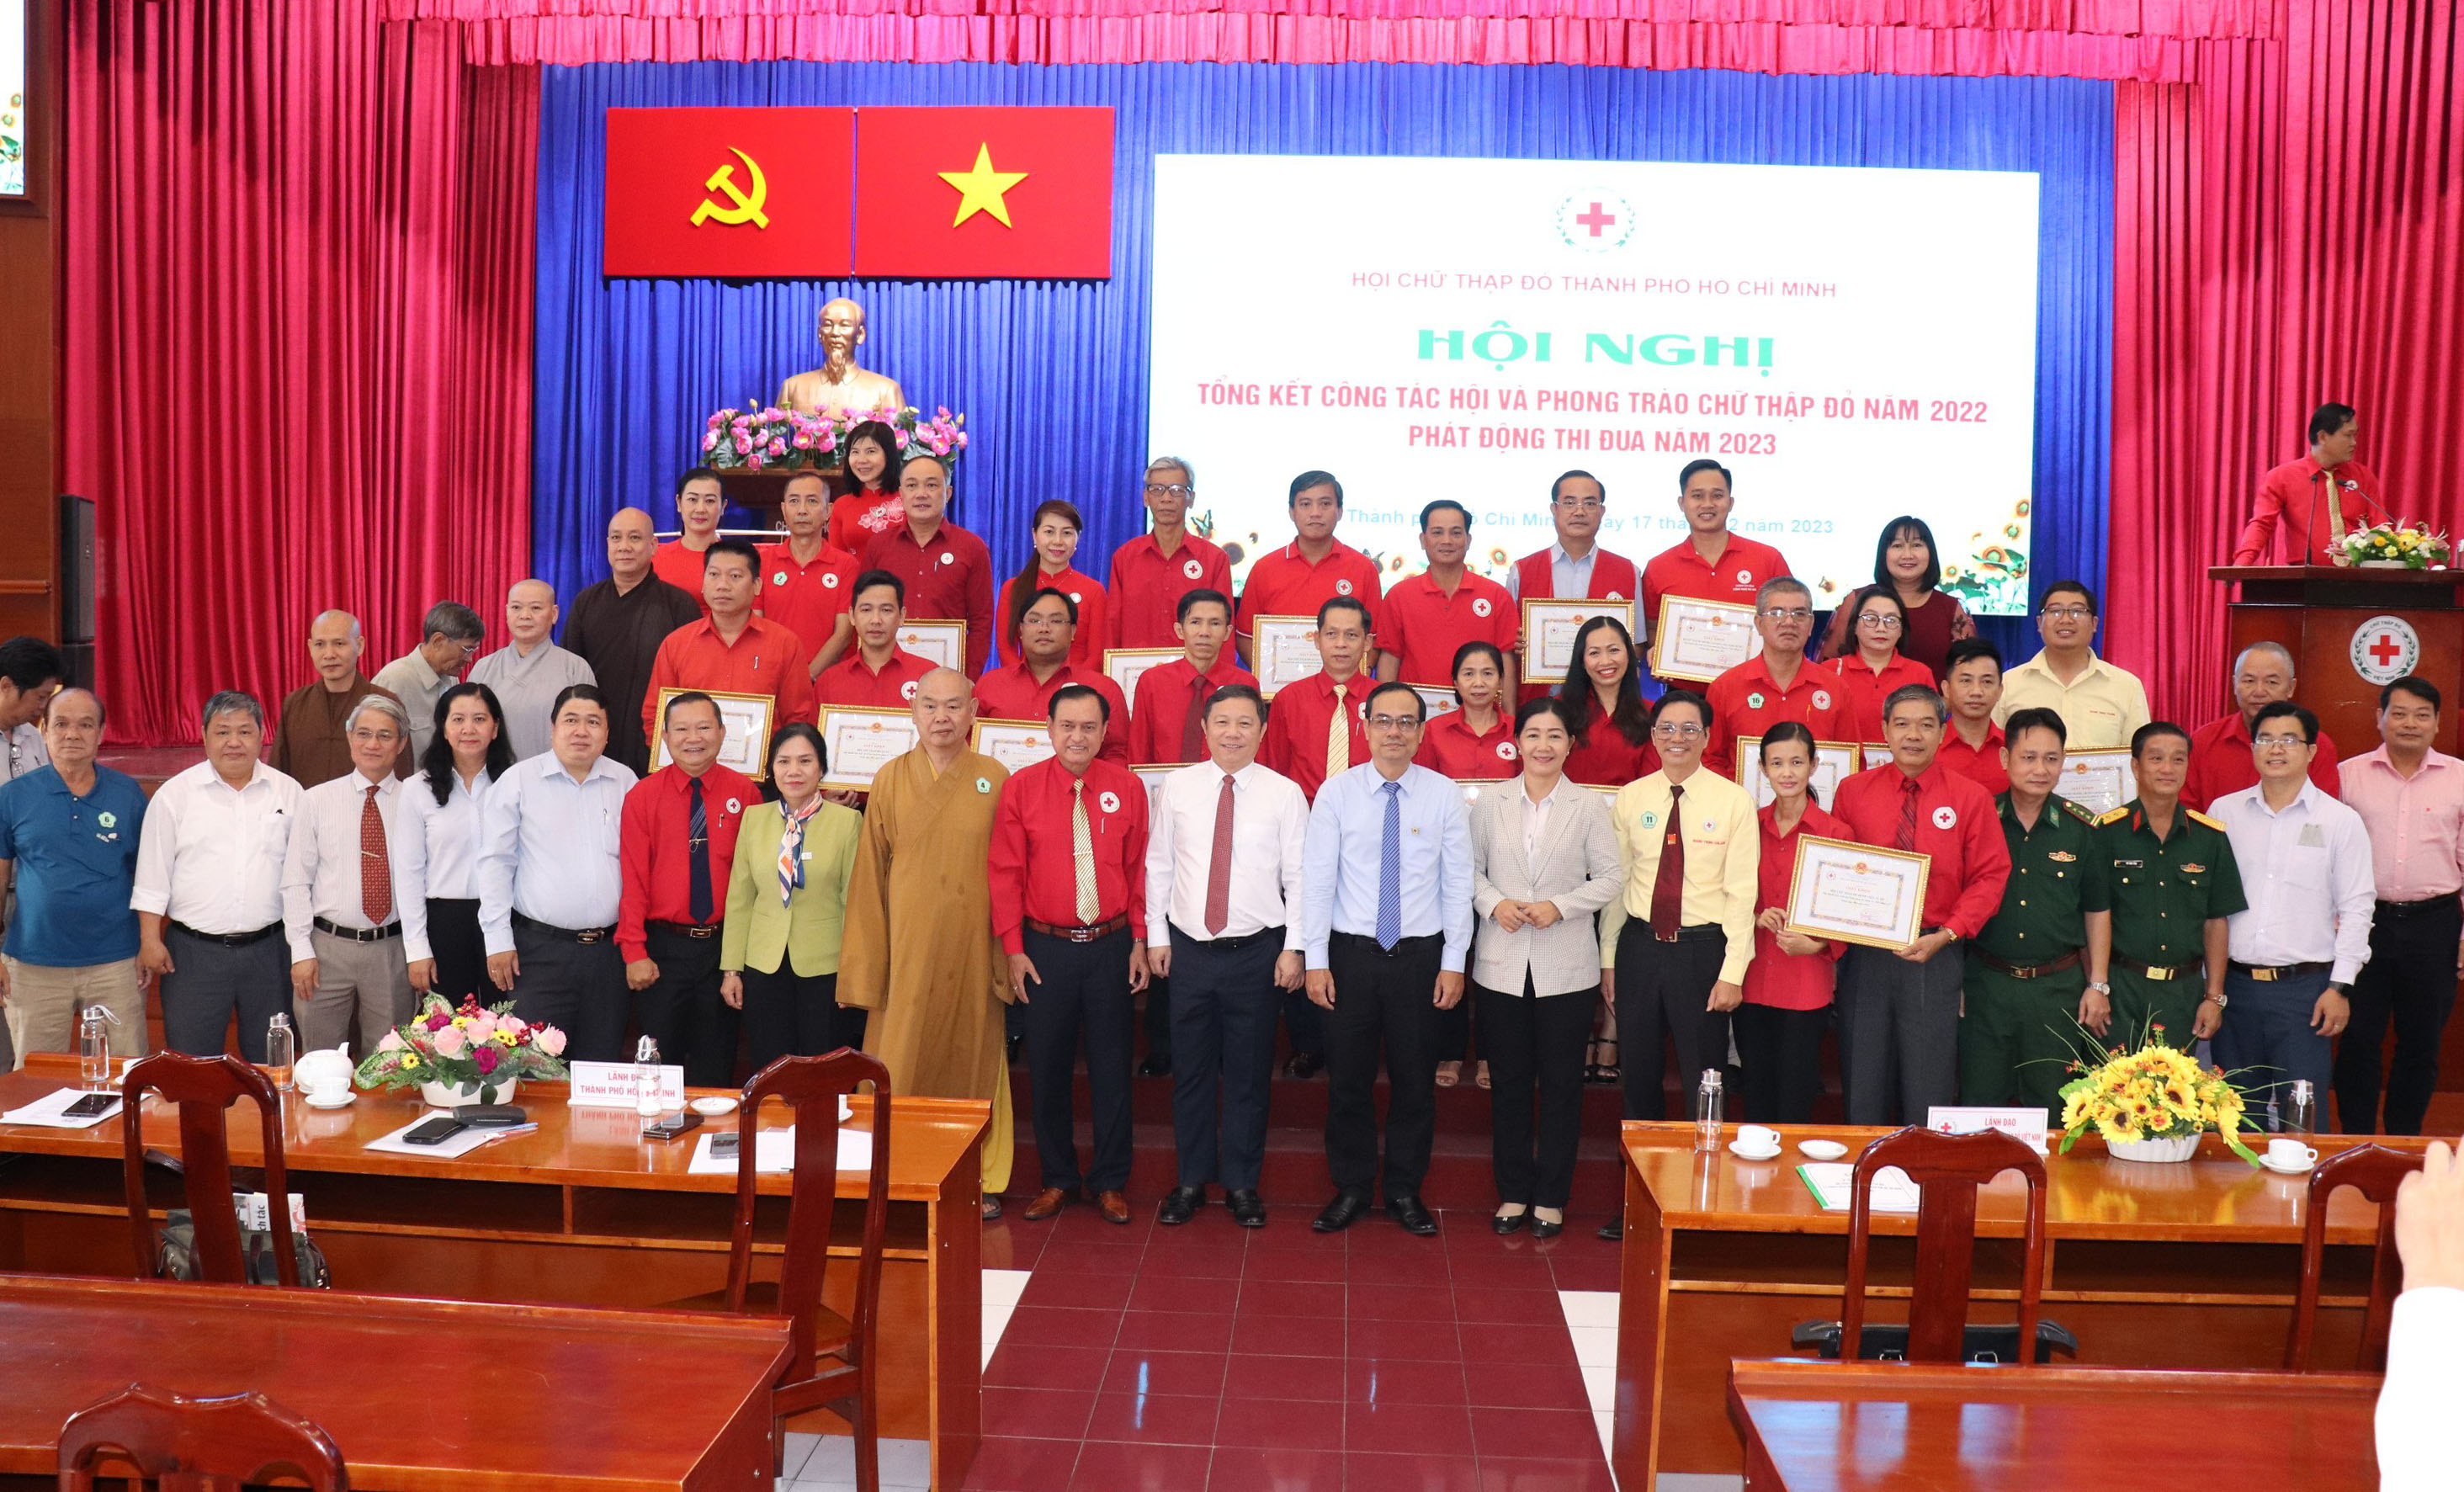 Hội nghị Tổng kết công tác Hội và phong trào Chữ Thập đỏ năm 2022 - Bản tin HTV